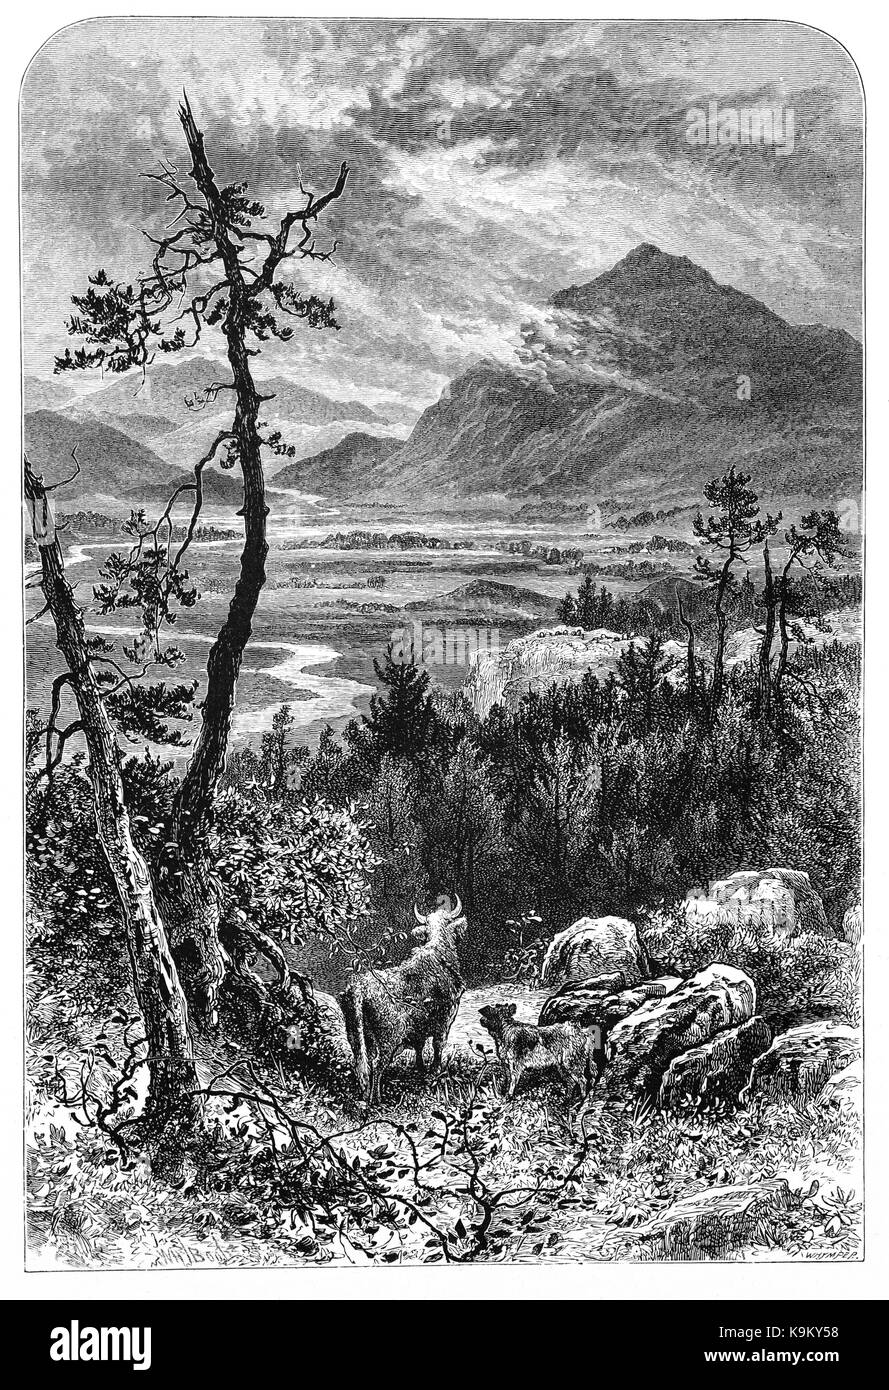 1870: Highland bovini al di sopra al di sopra di Kingussie, una piccola città nella regione delle Highlands della Scozia. Inverness-shire, Scozia, con Creag Dubh Mountain in distanza. Foto Stock